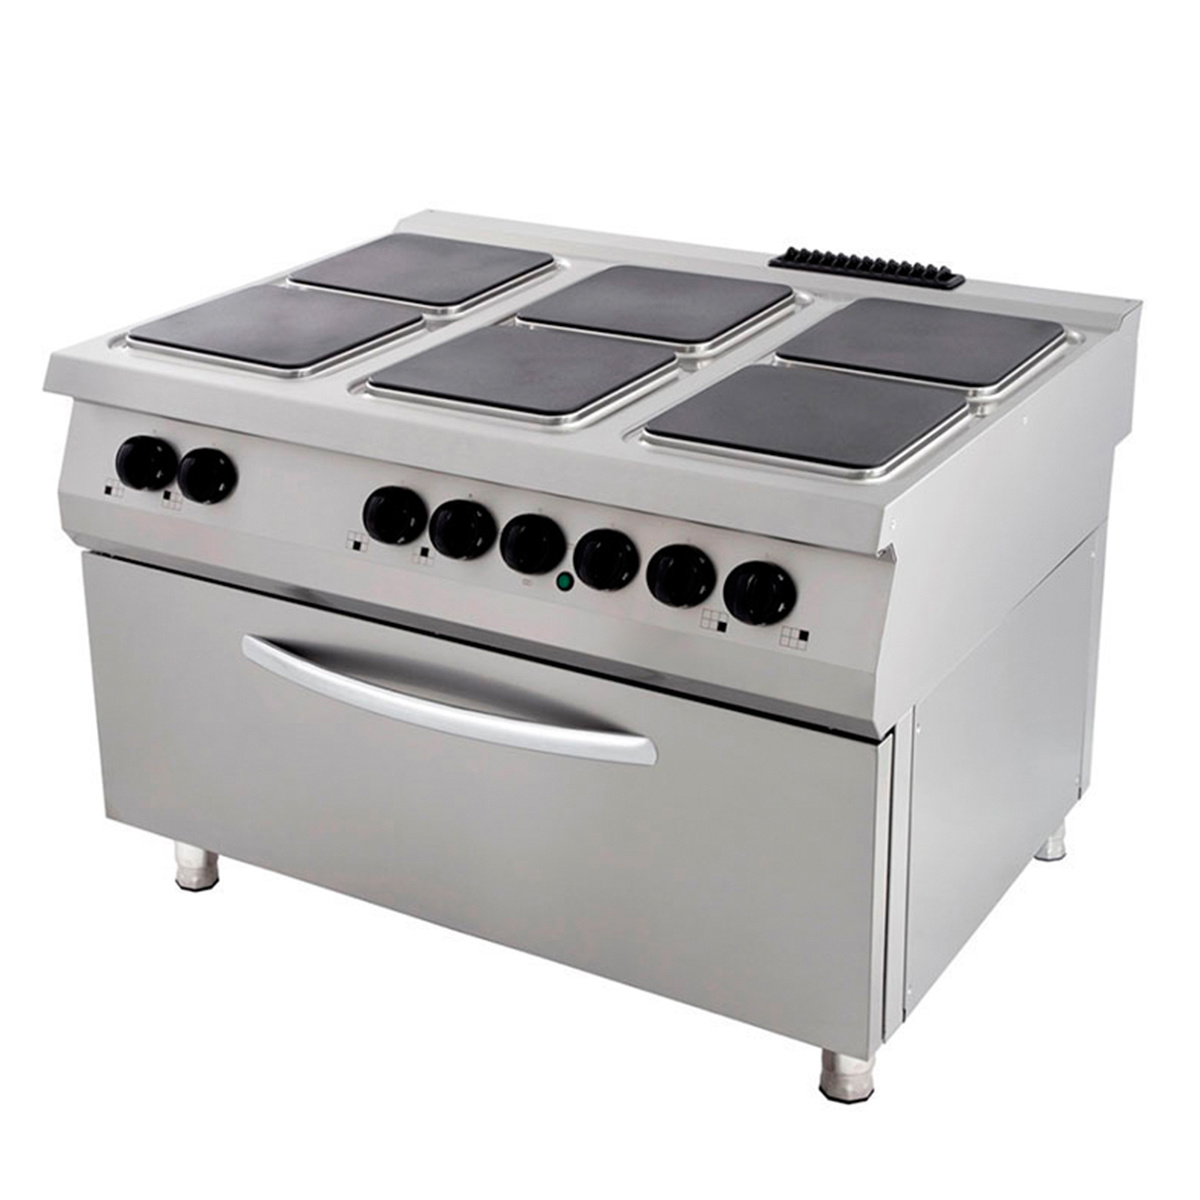 Gezag Opsommen Parana rivier Premium Fornuis - 6 Pitten - Inclusief Brede Oven - Elektrisch - Maxima  Kitchen Equipment